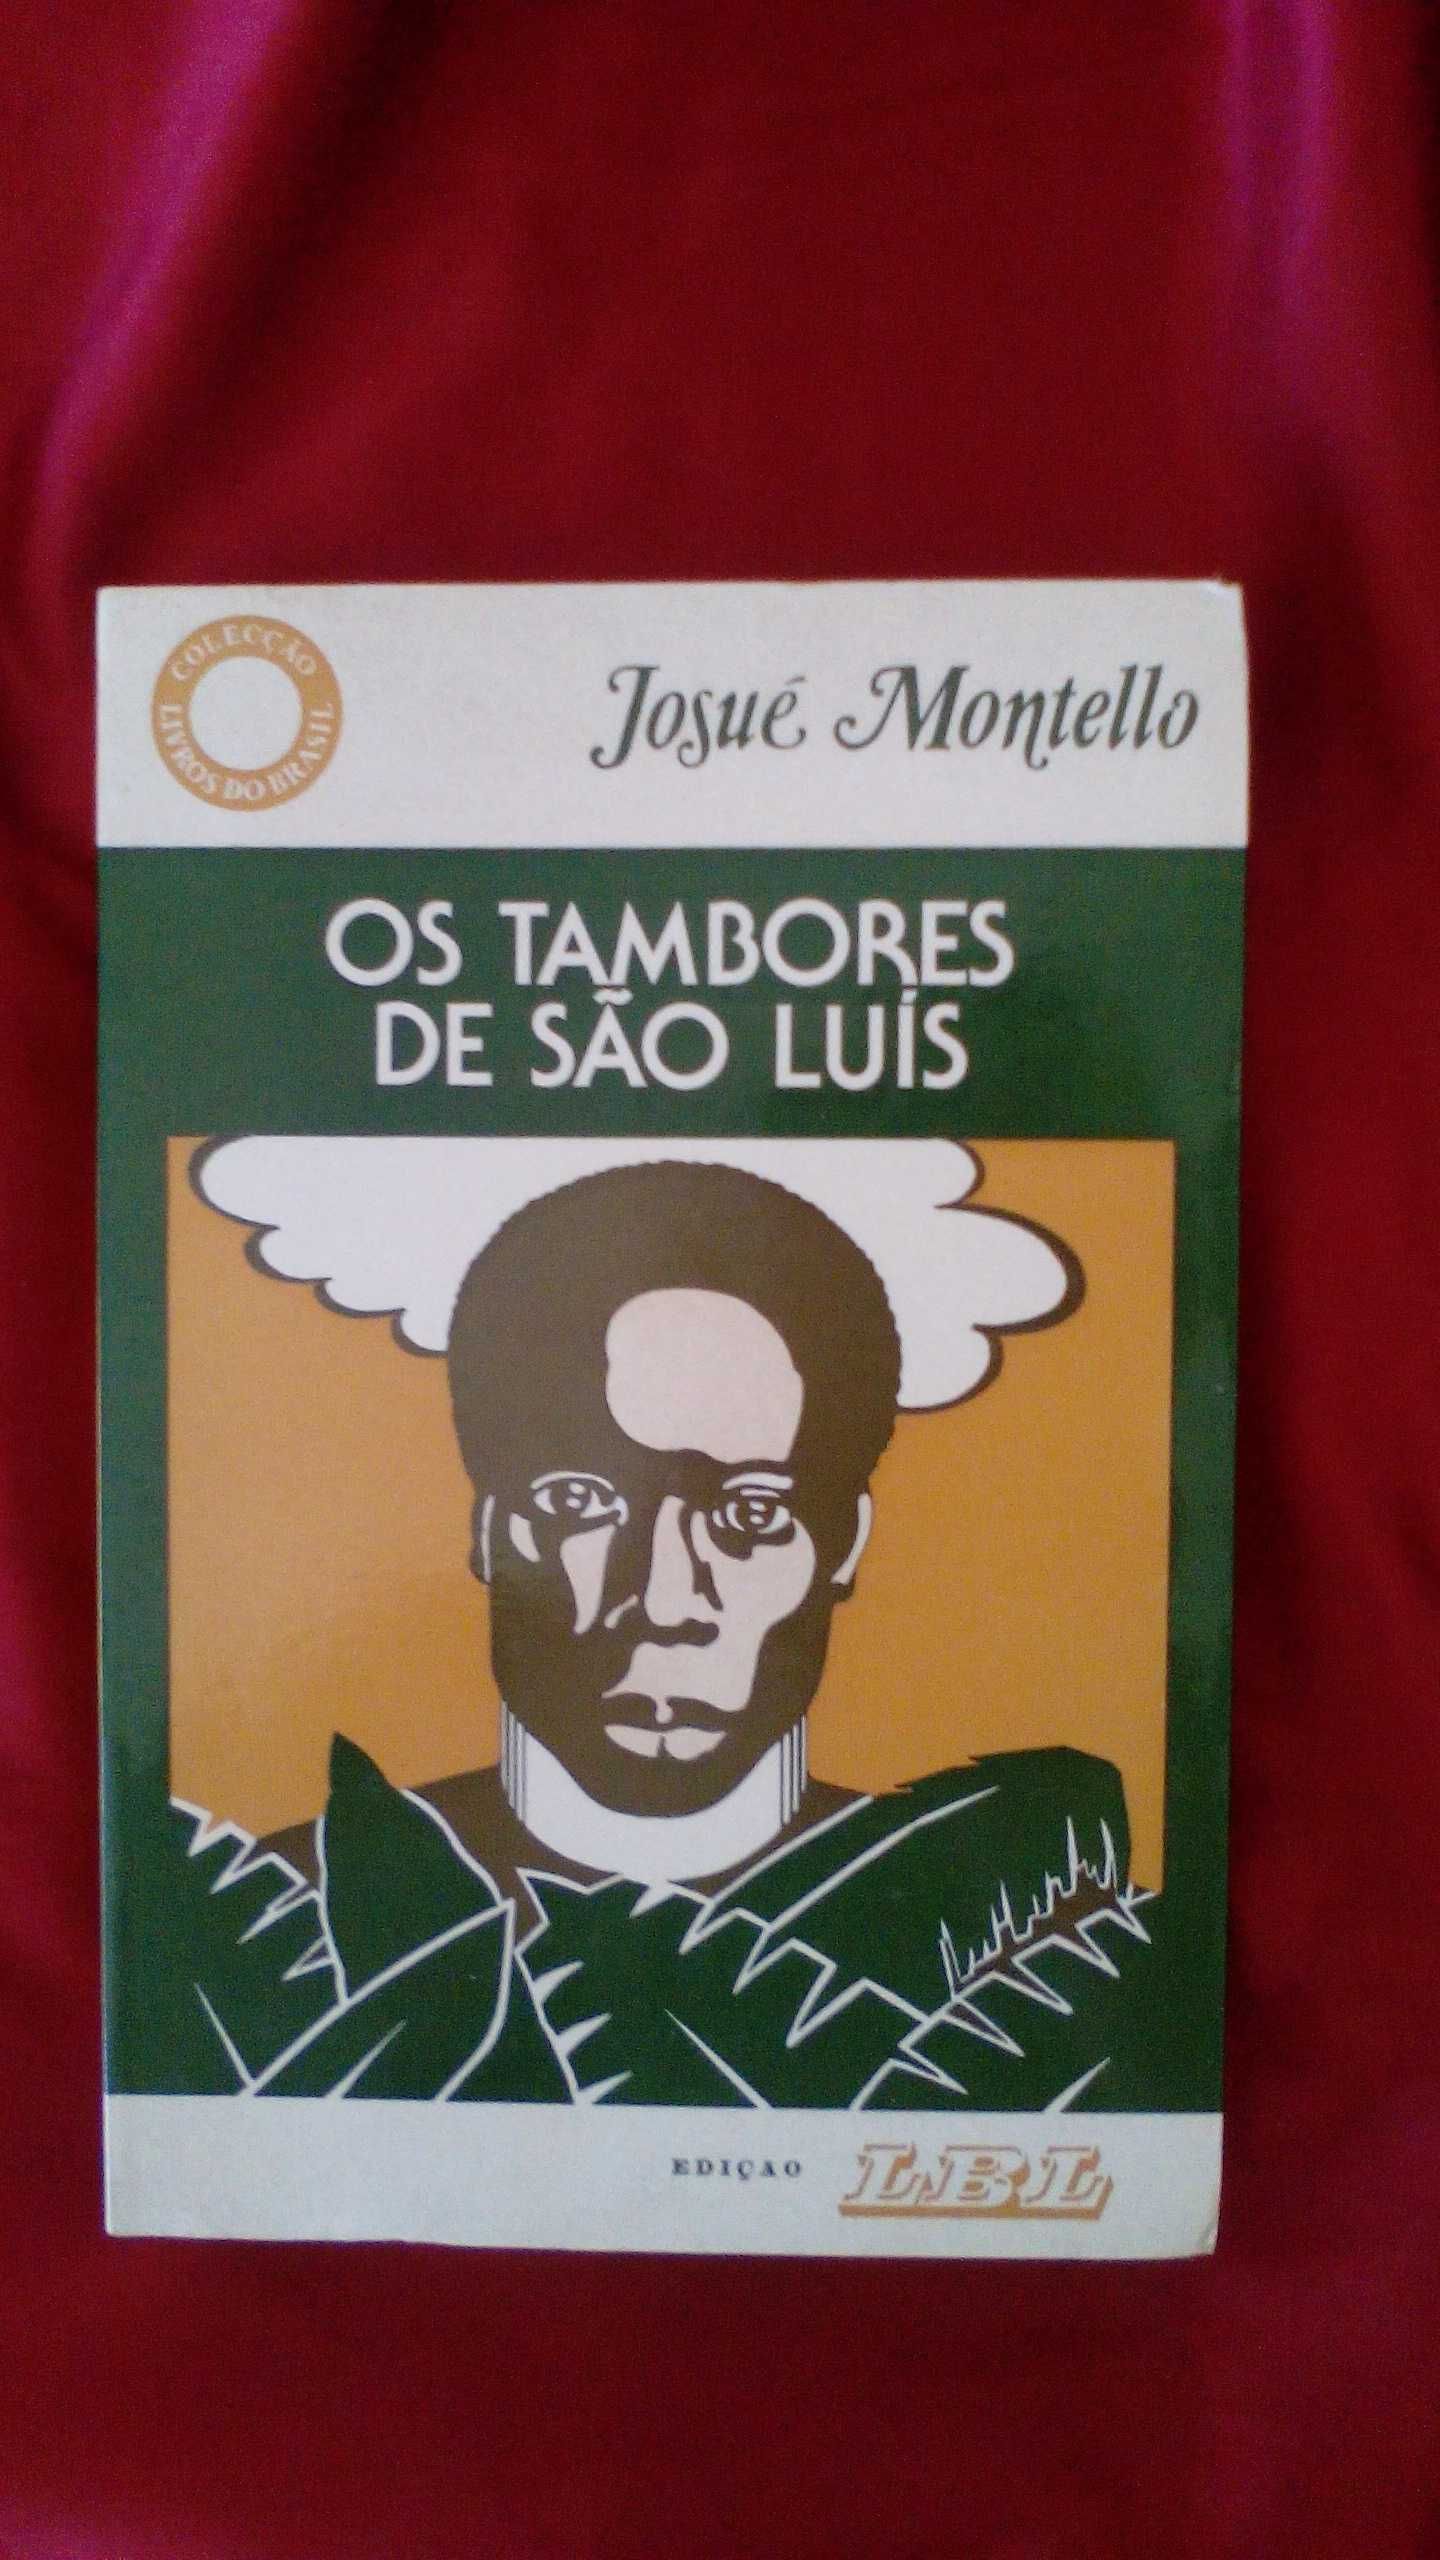 Os Tambores de S. Luís, de Josué Montello